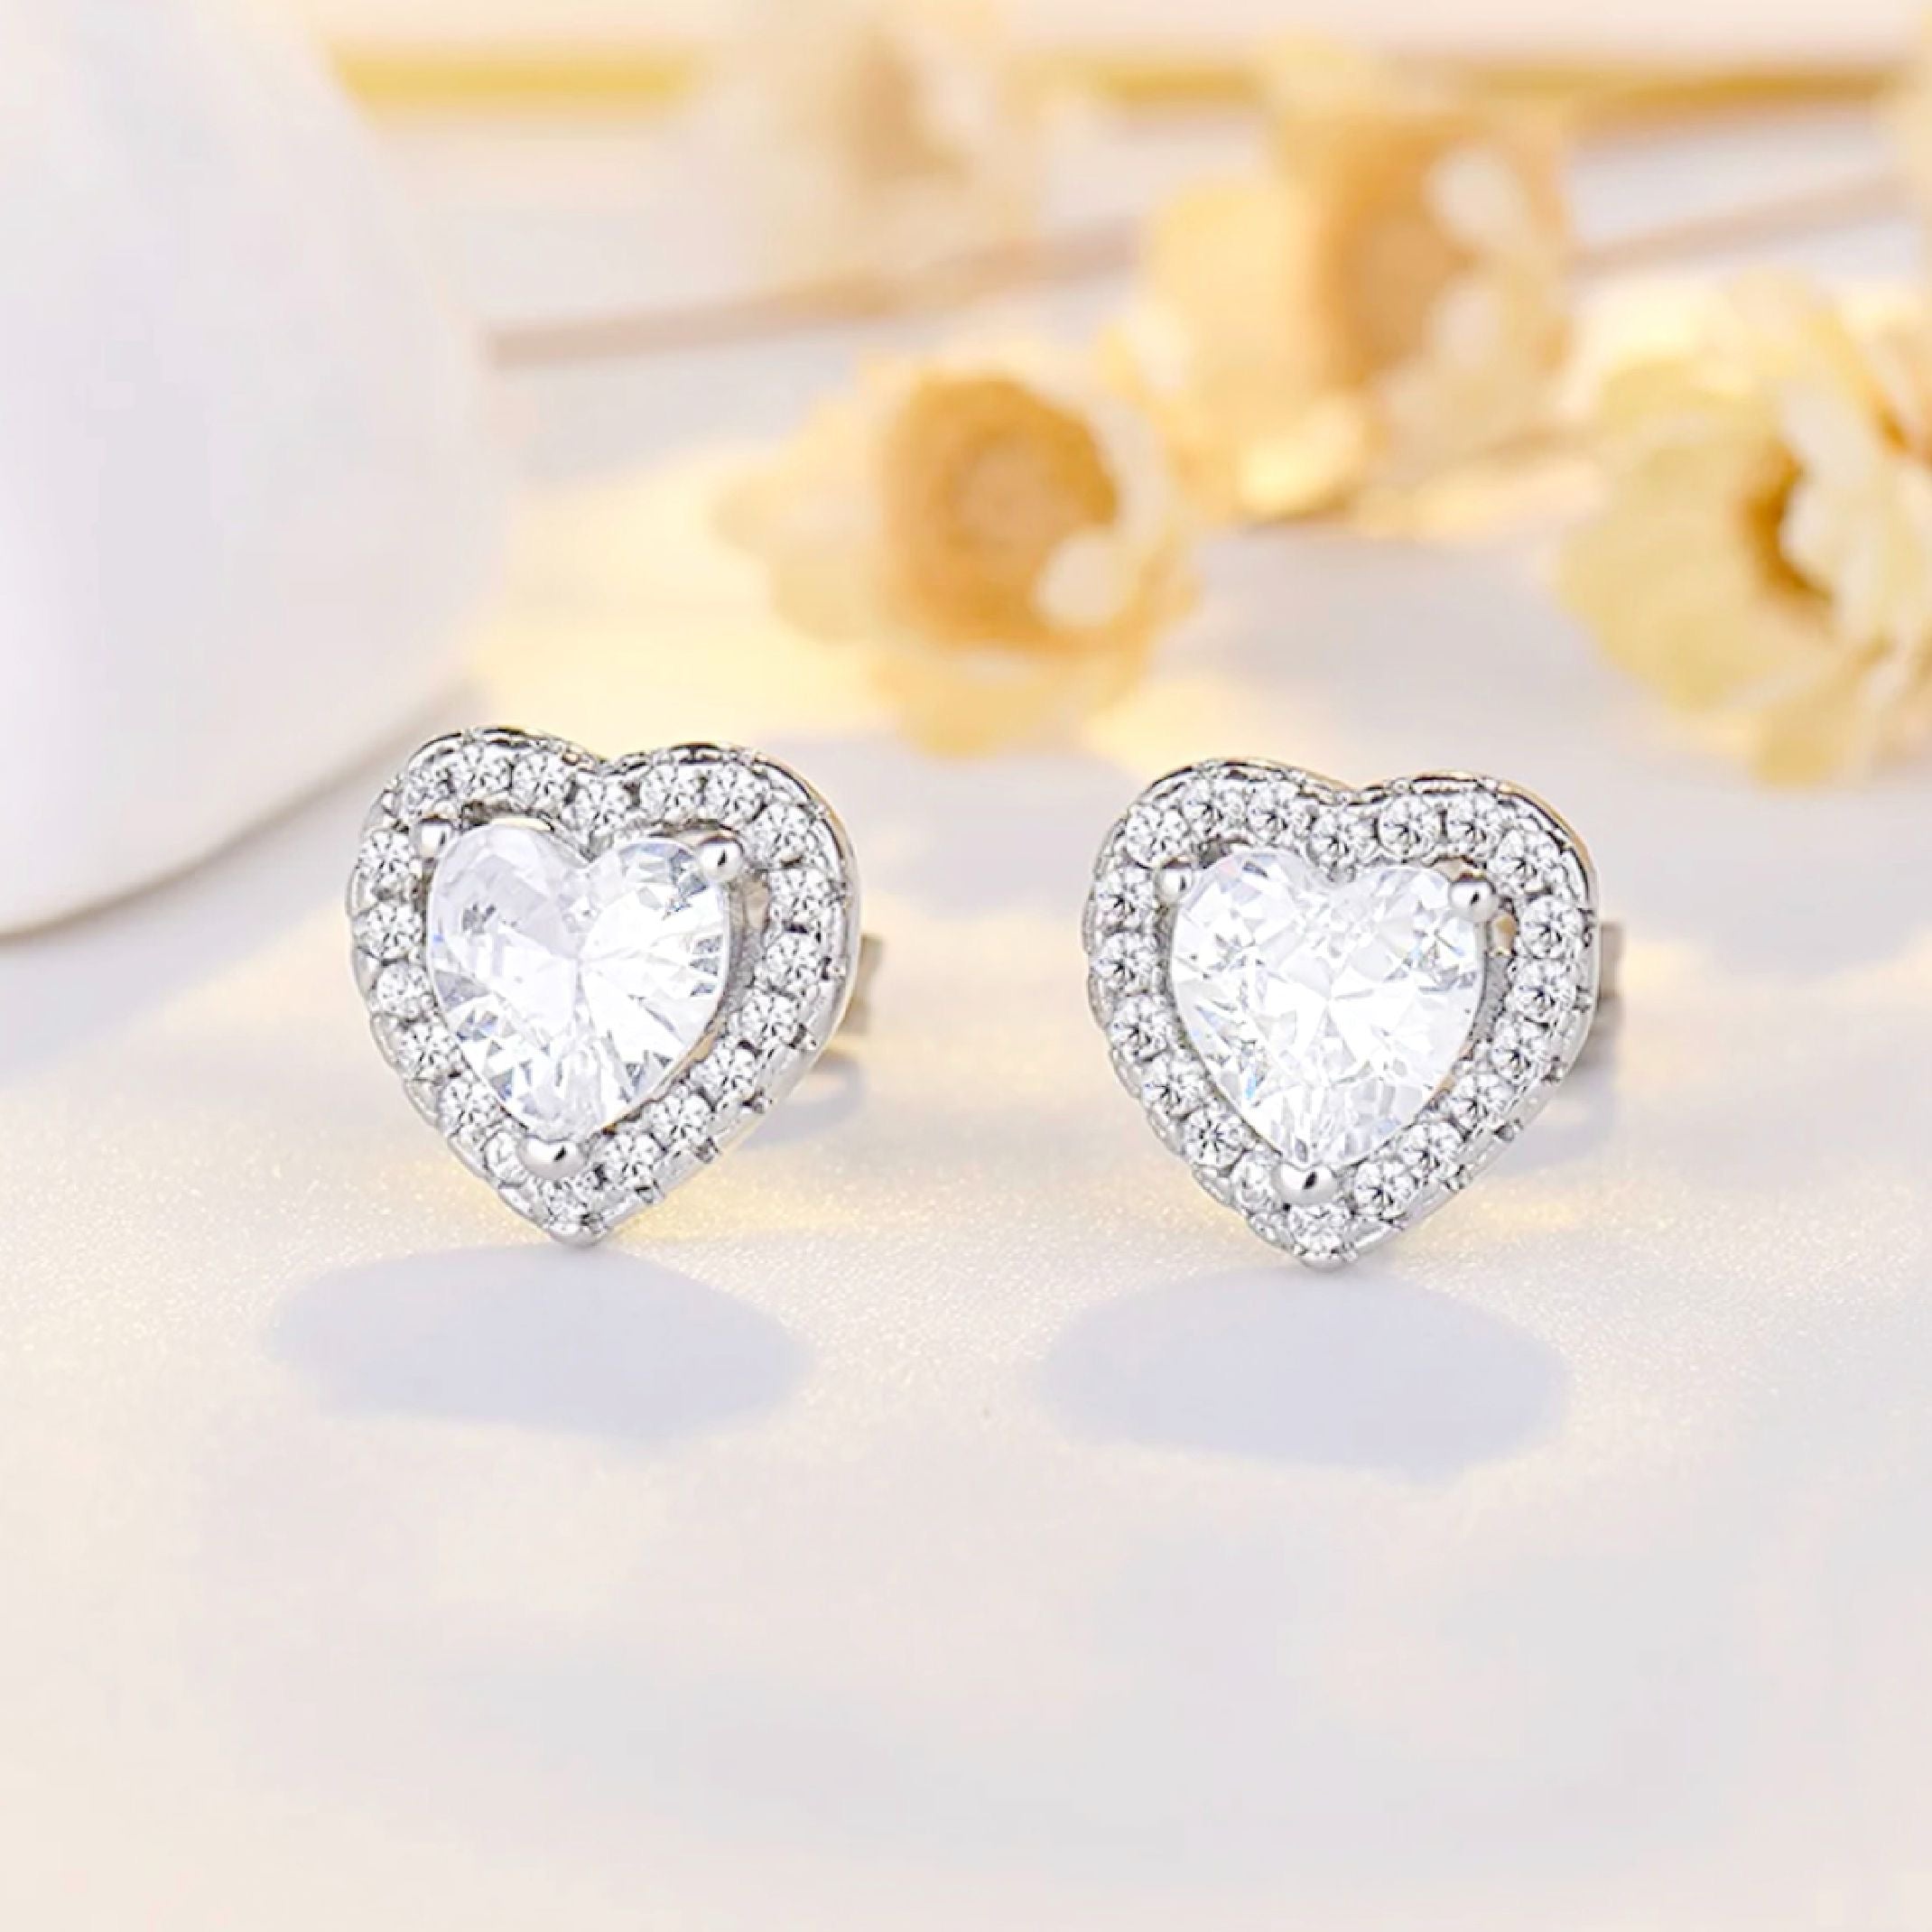 Silver heart stud earrings 